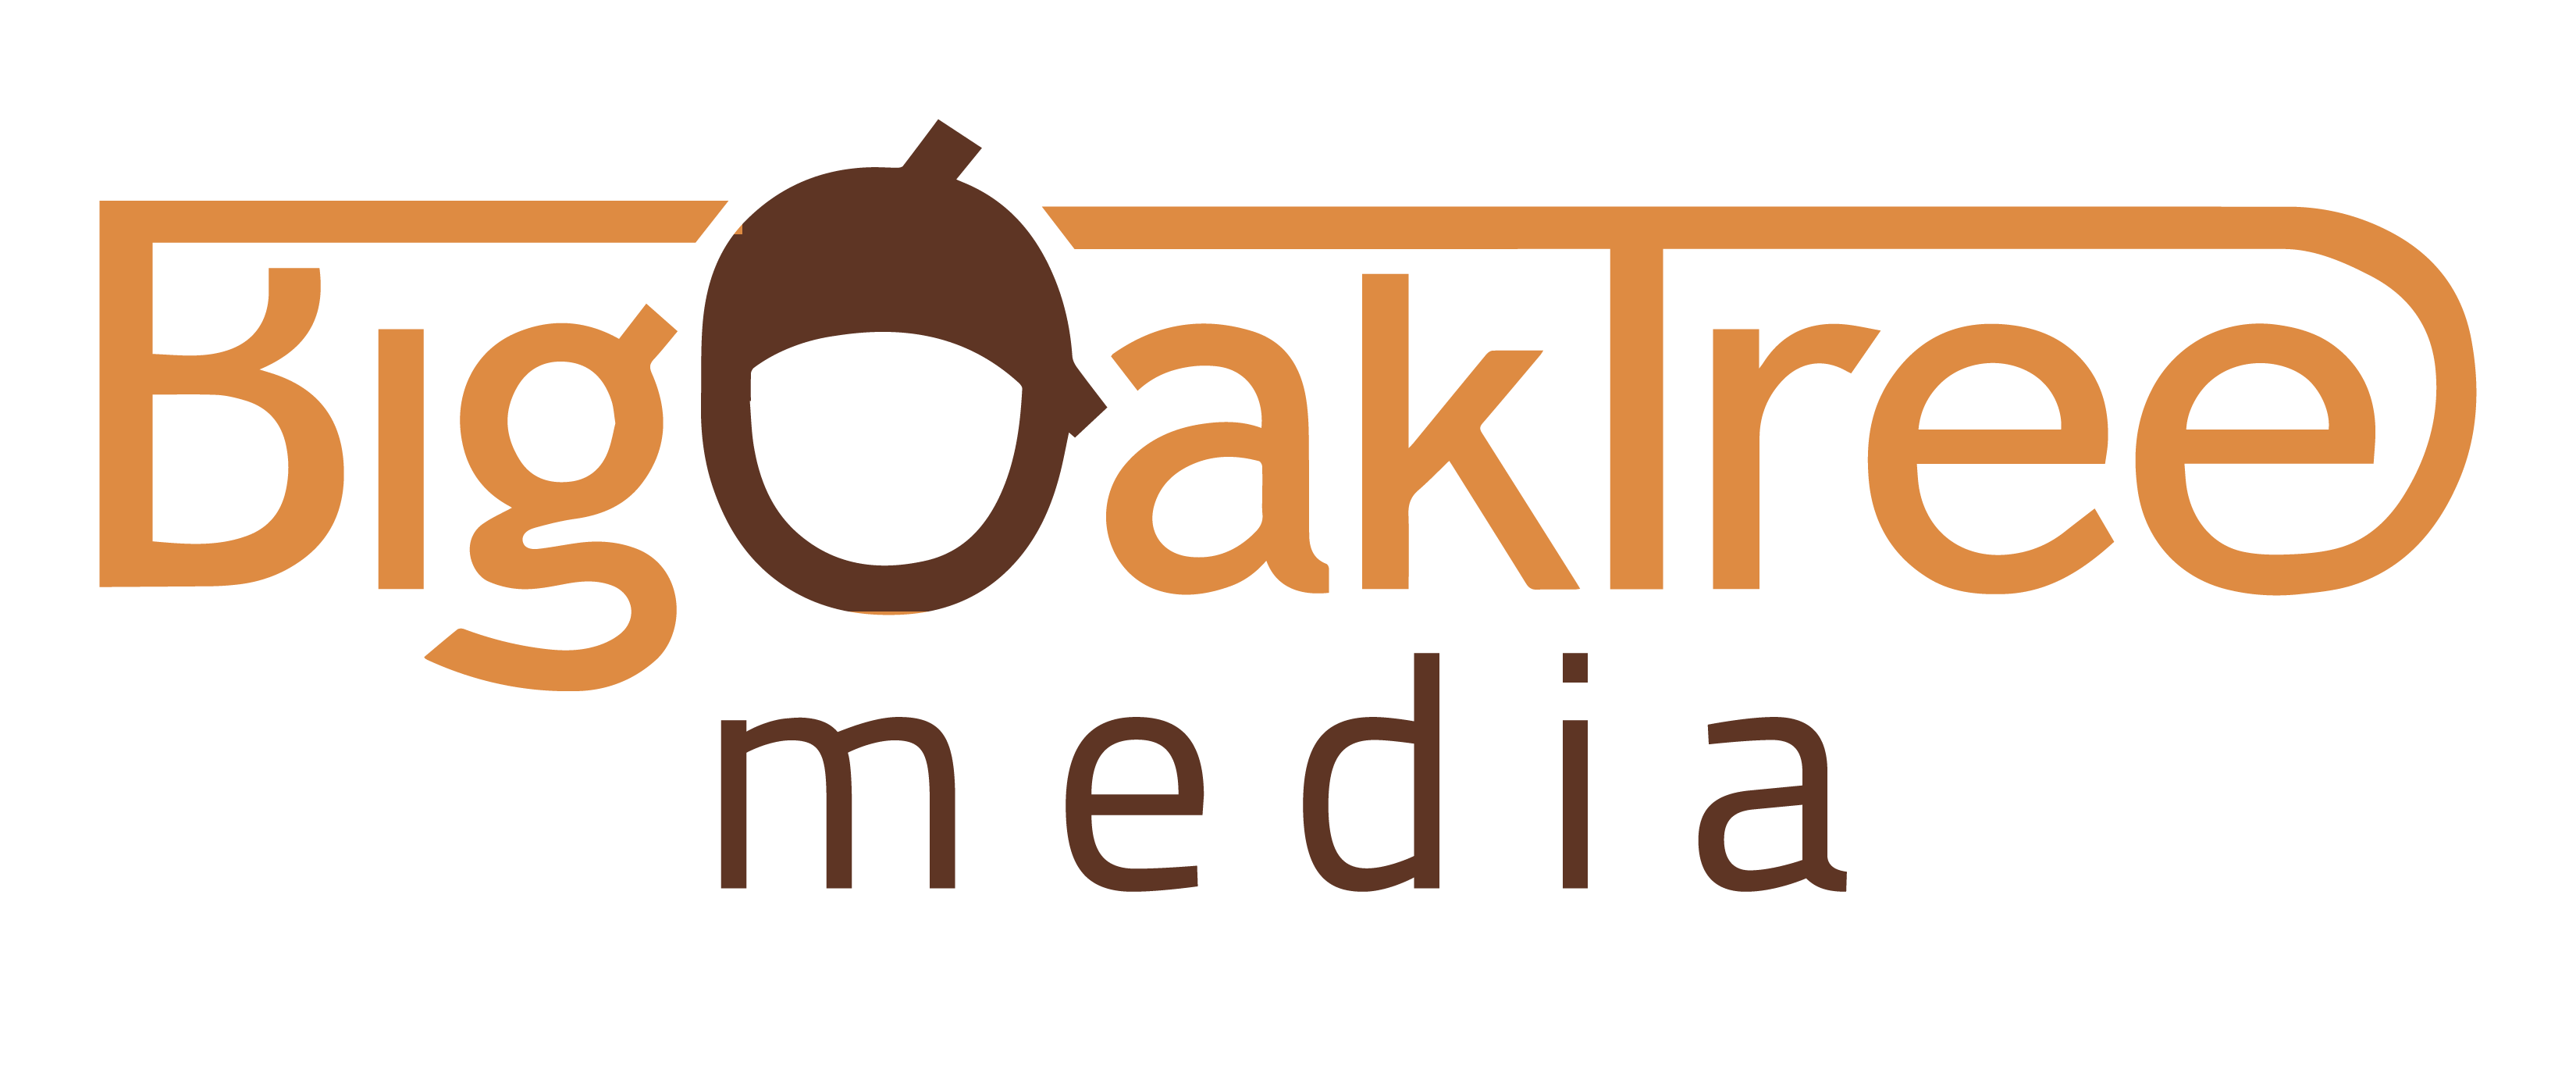 Big Oak Tree Media